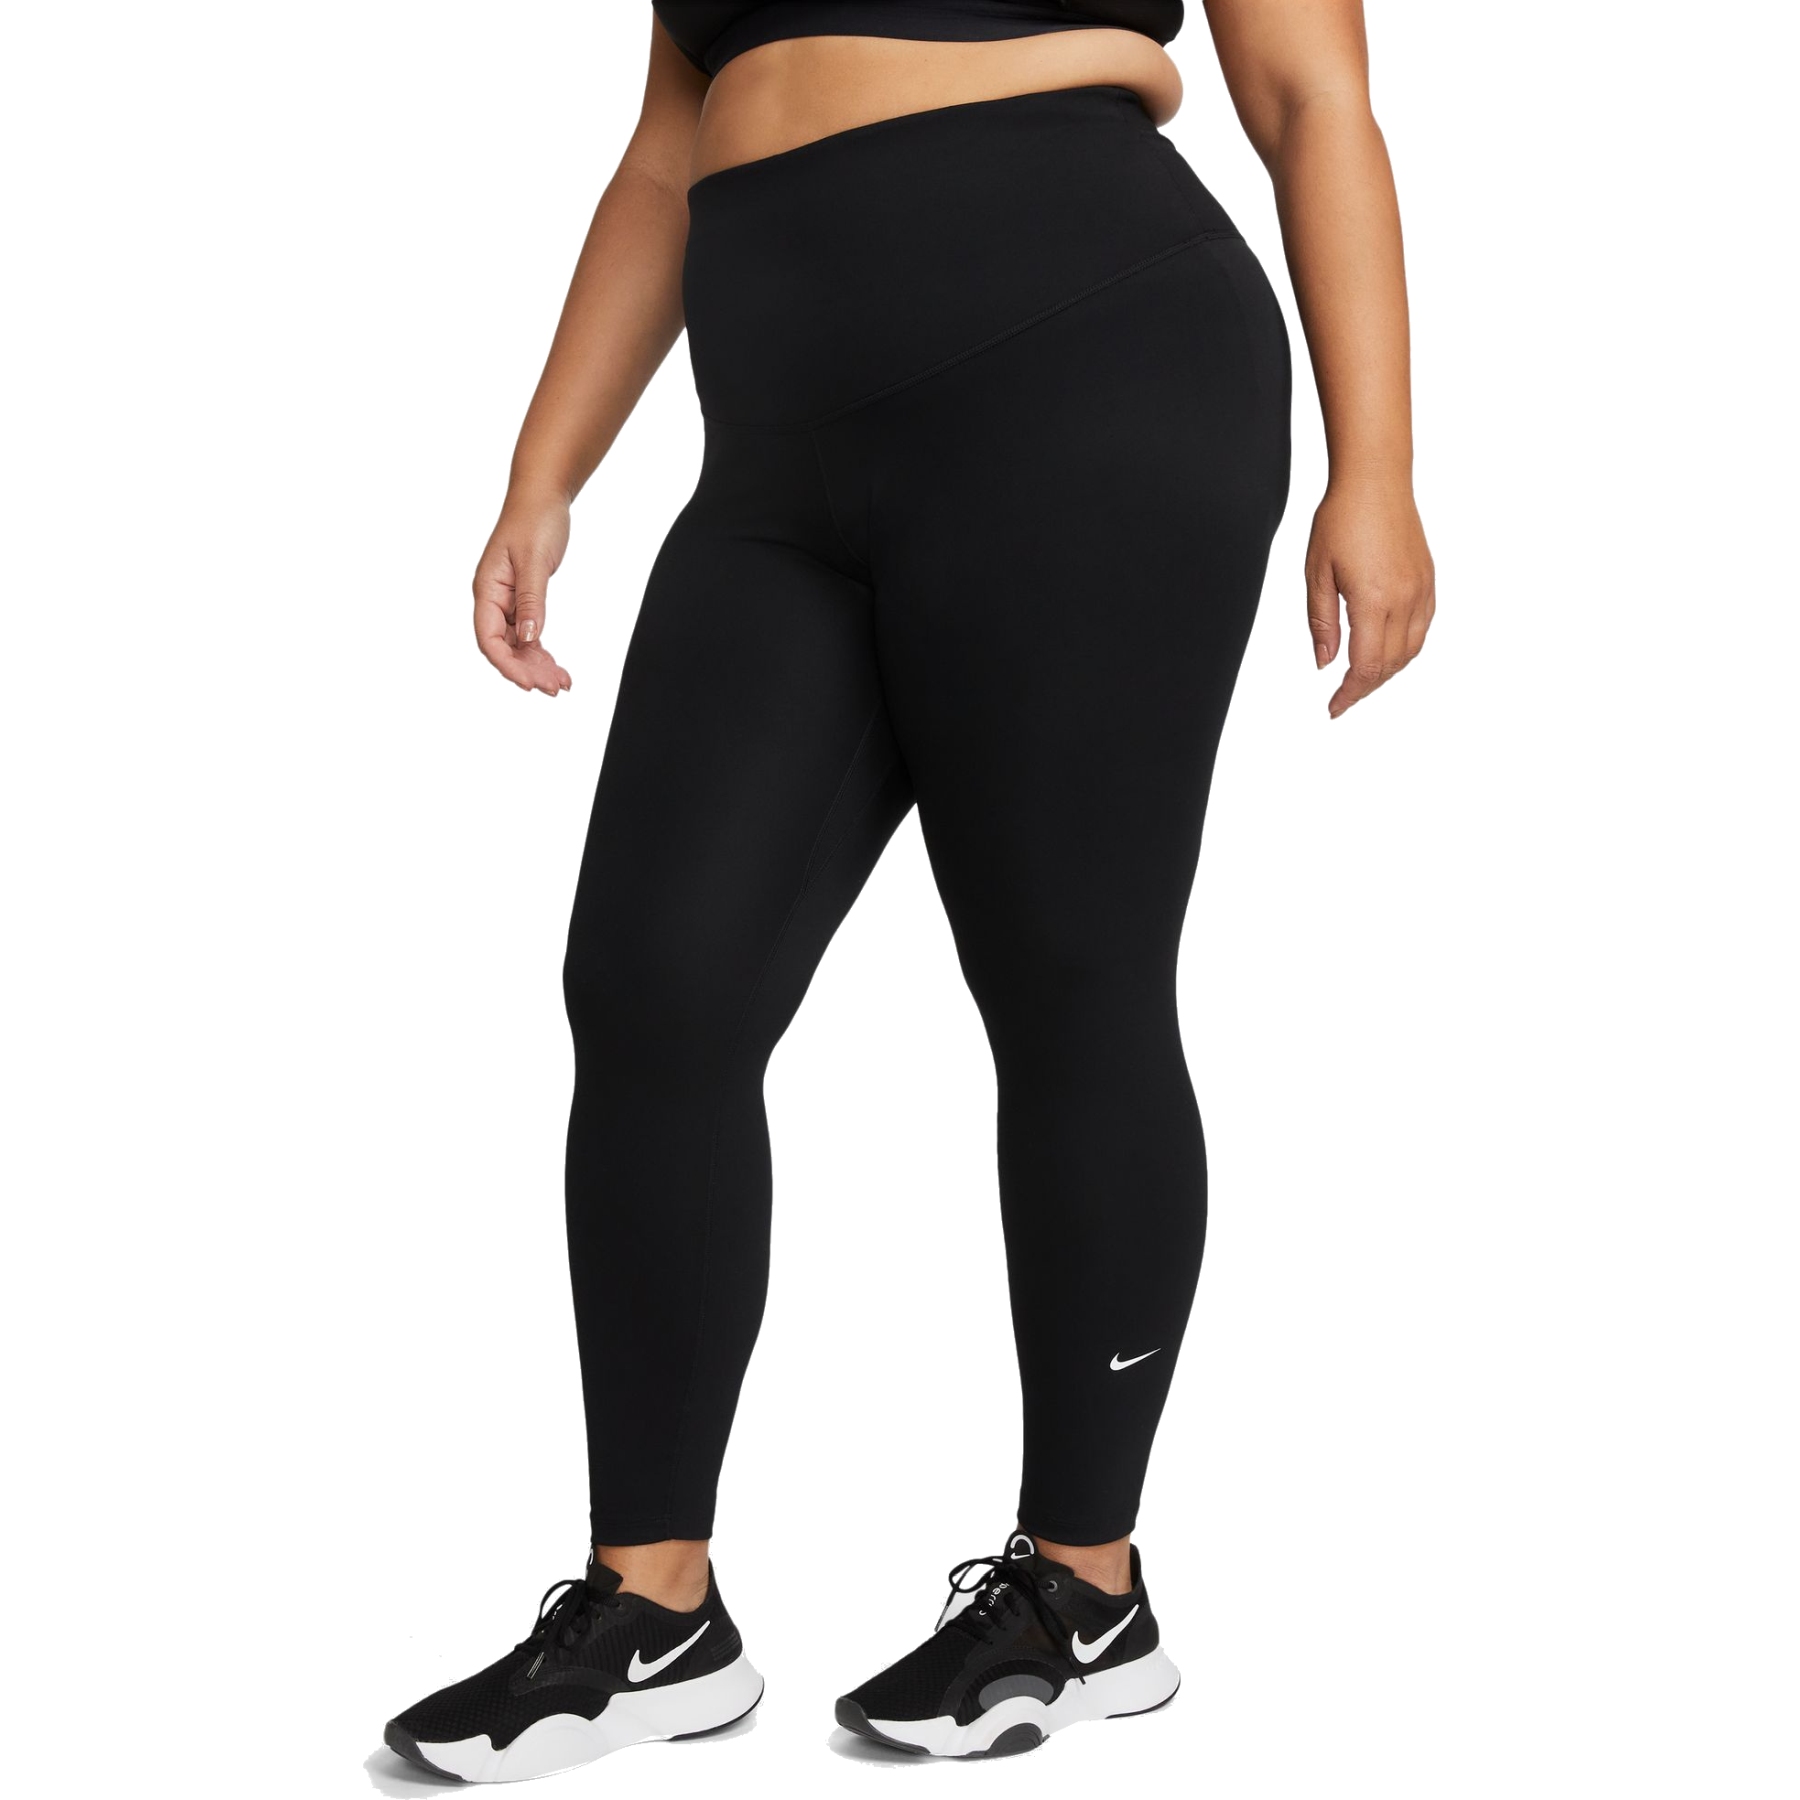 Produktbild von Nike One Dri-FIT Leggings mit hohem Bund Damen (Extra groß) - schwarz/weiß DN5521-010